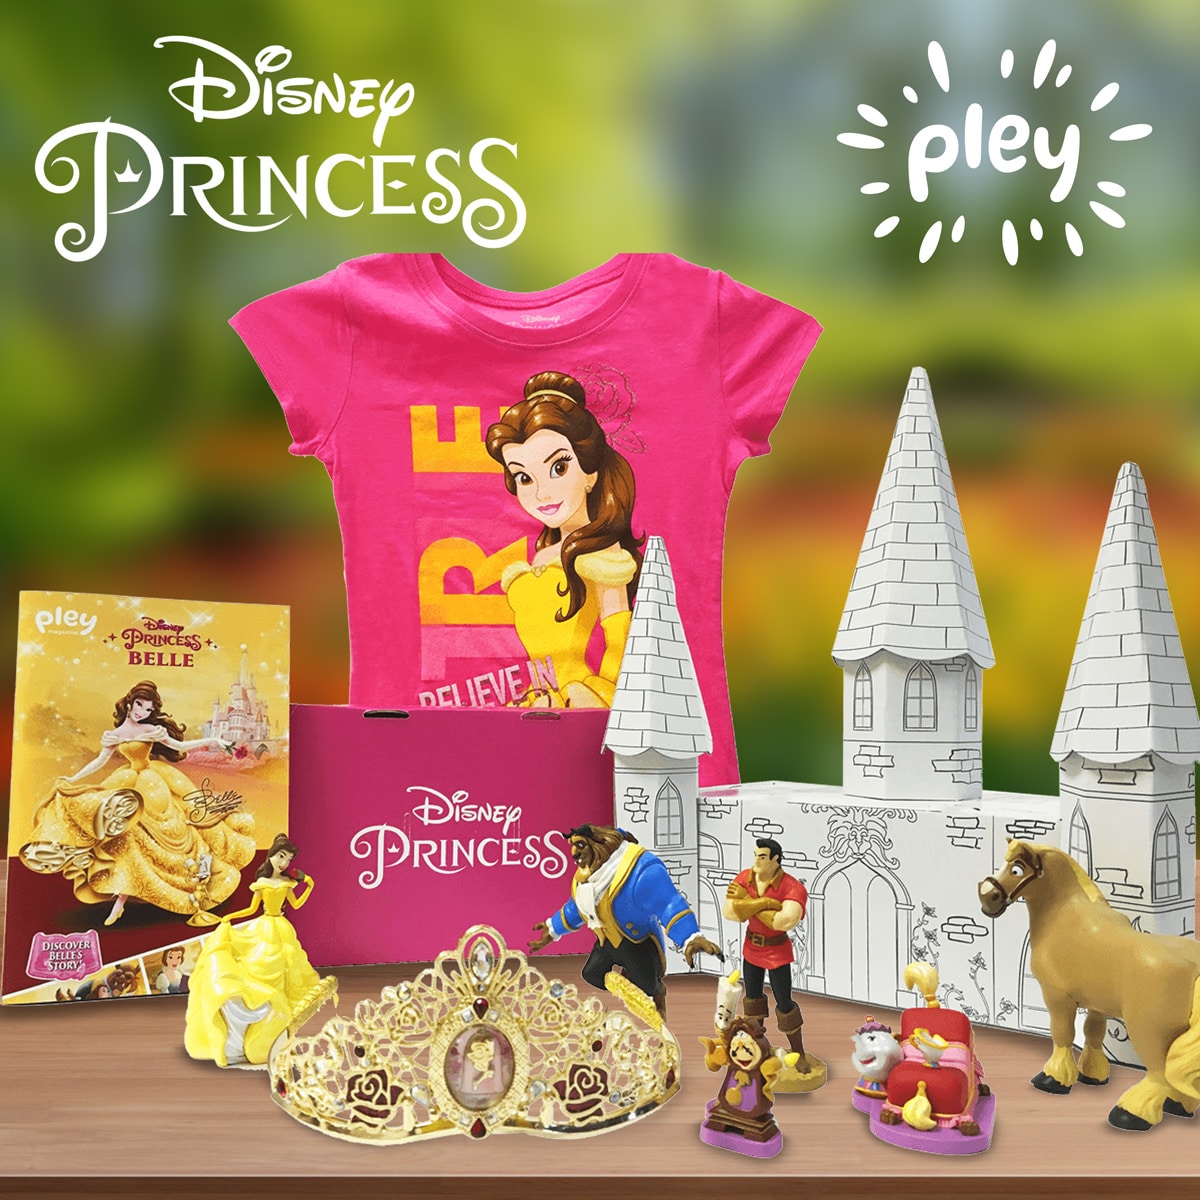 Disney Princess PleyBox Coupon – 25% Off Your First Box!